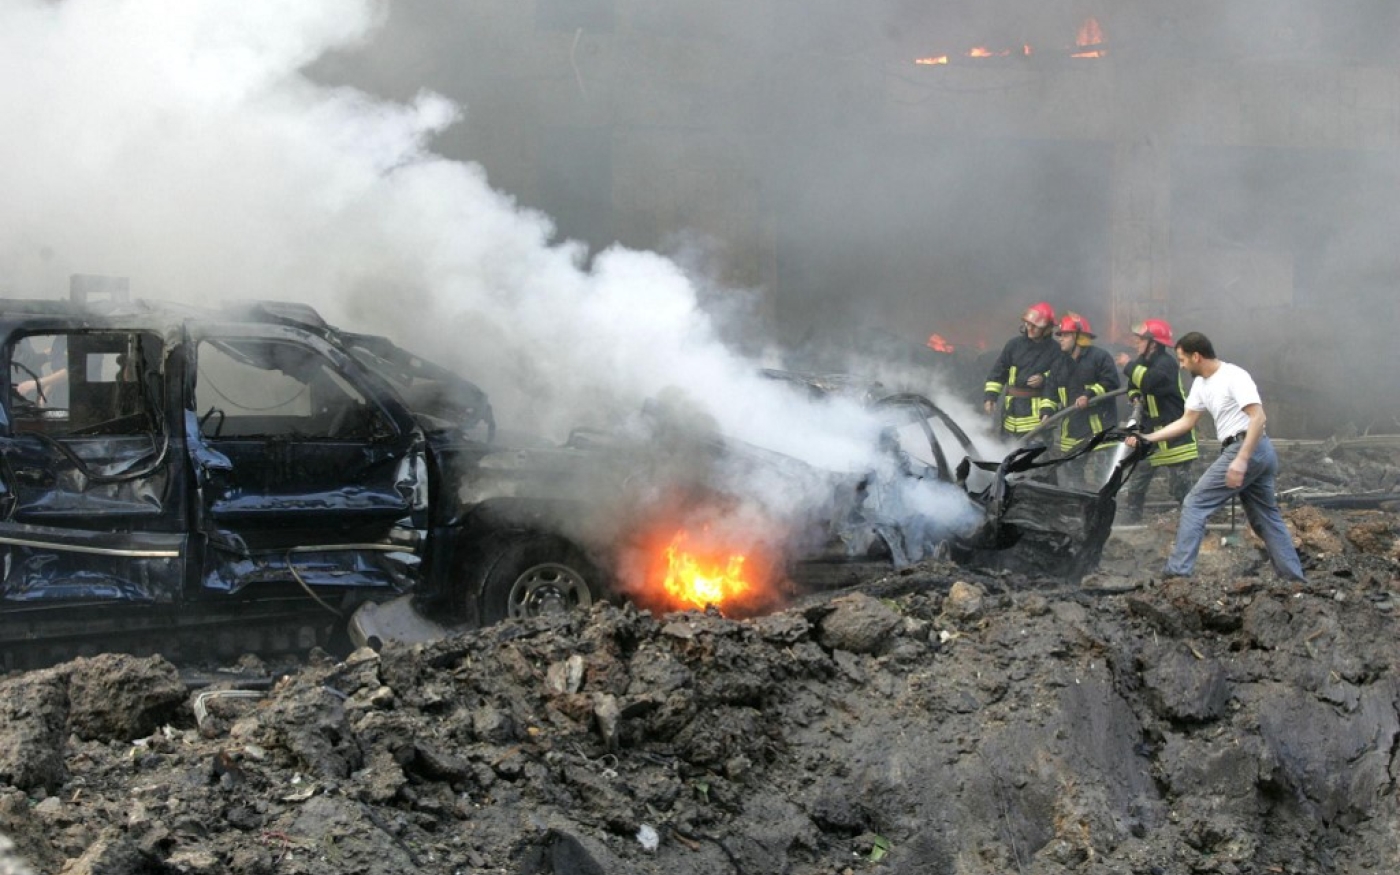 Des pompiers tentent d’éteindre le feu dans le convoi du Premier ministre Rafiq Hariri, décimé par une explosion, le 14 février 2005 à Beyrouth (AFP/Joseph Barrak)